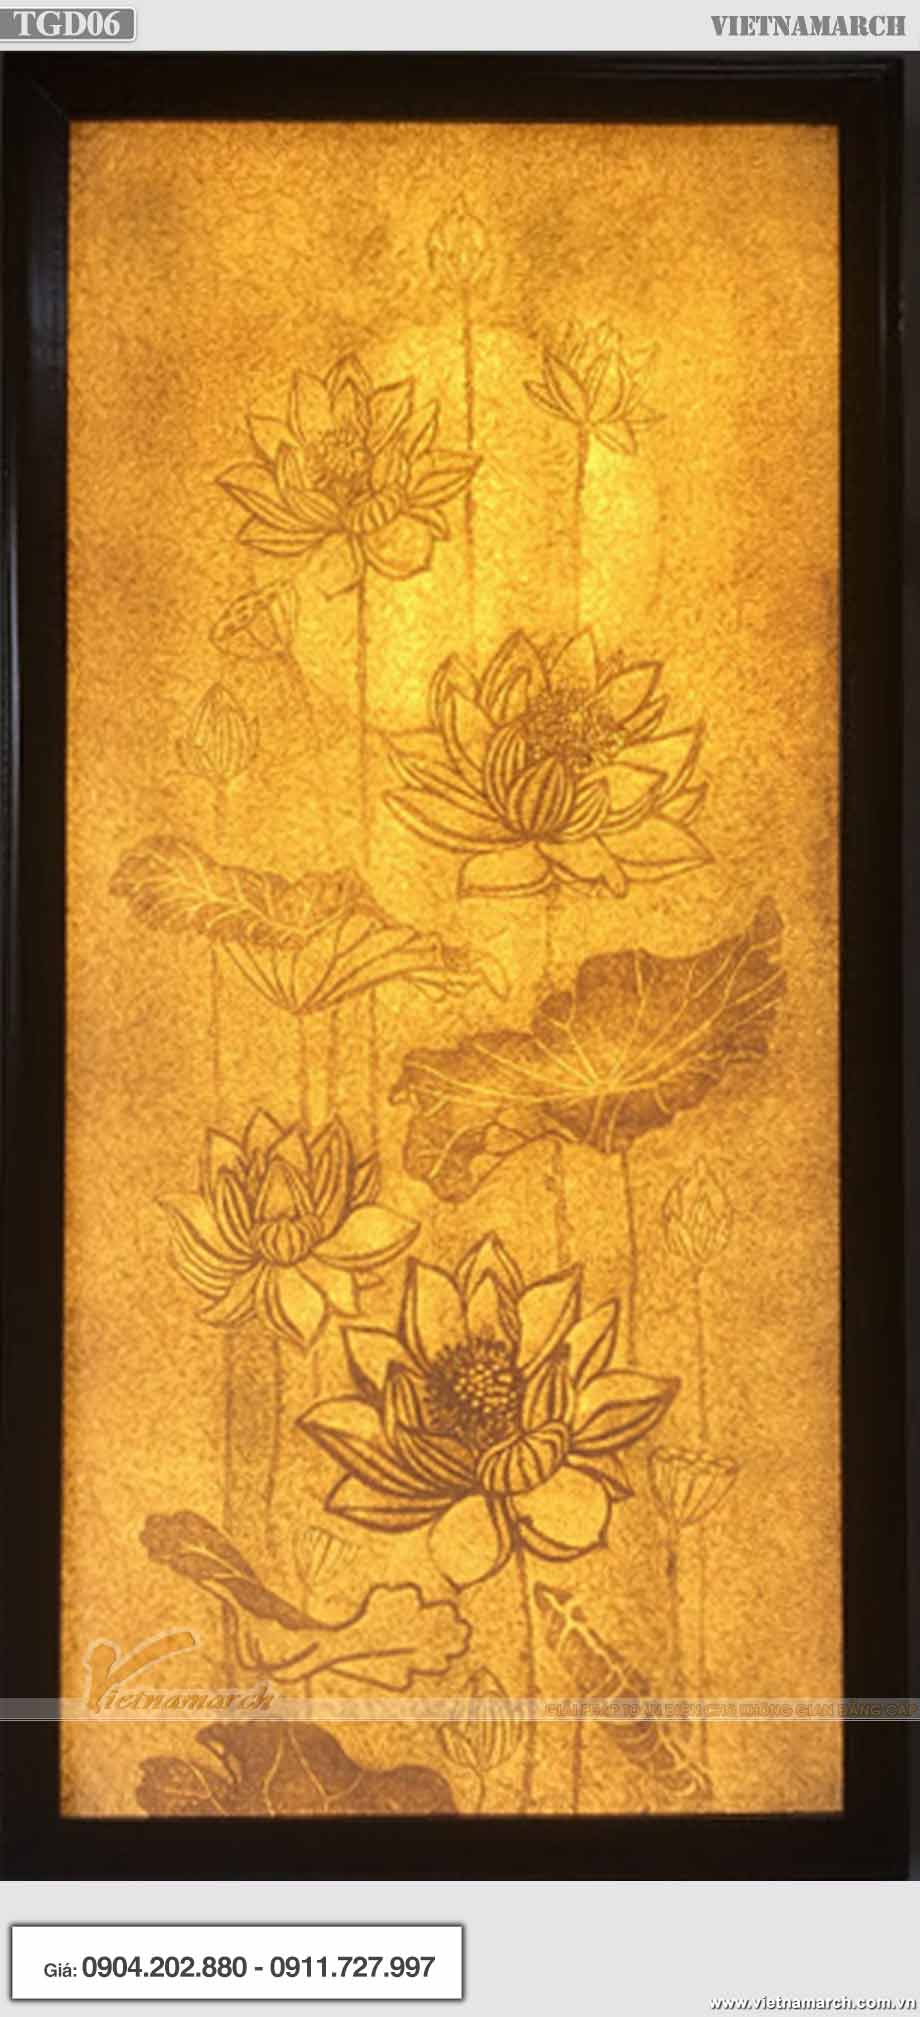 Mẫu tranh giấy dừa hoa sen hình chữ nhật - TGD06